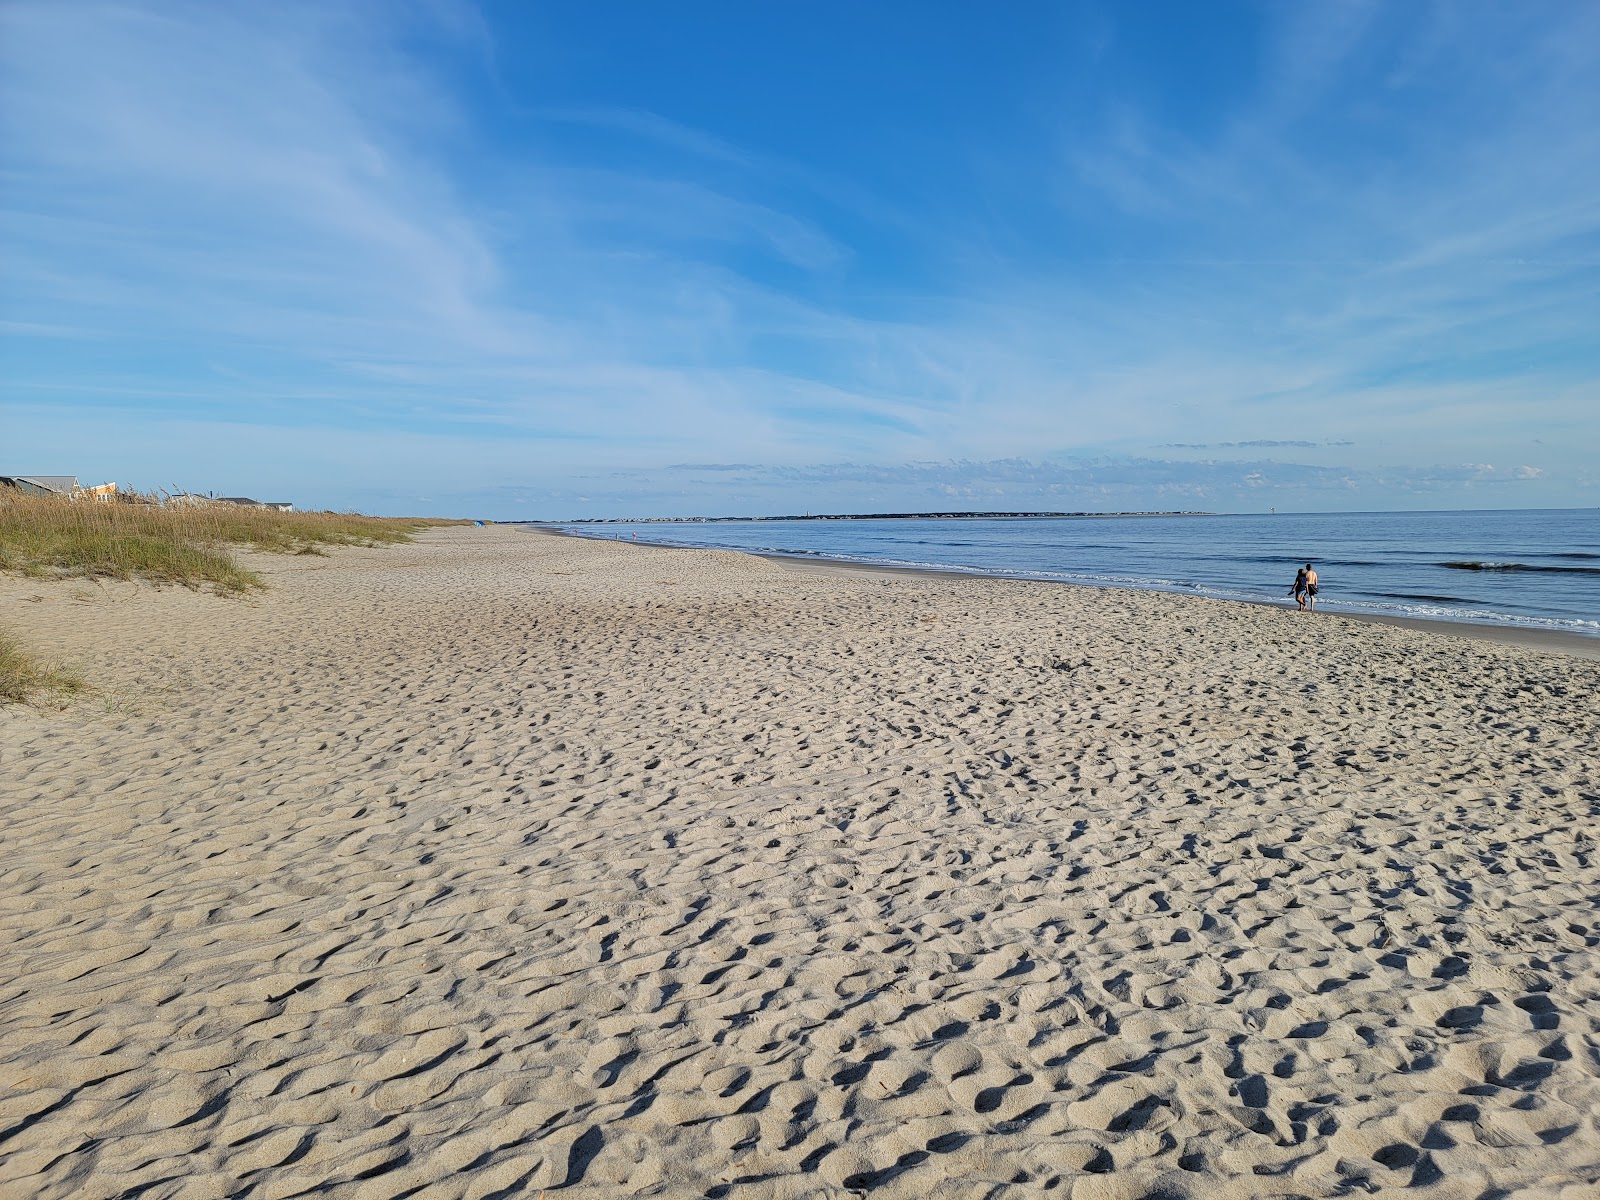 Fotografie cu Caswell beach cu o suprafață de nisip strălucitor